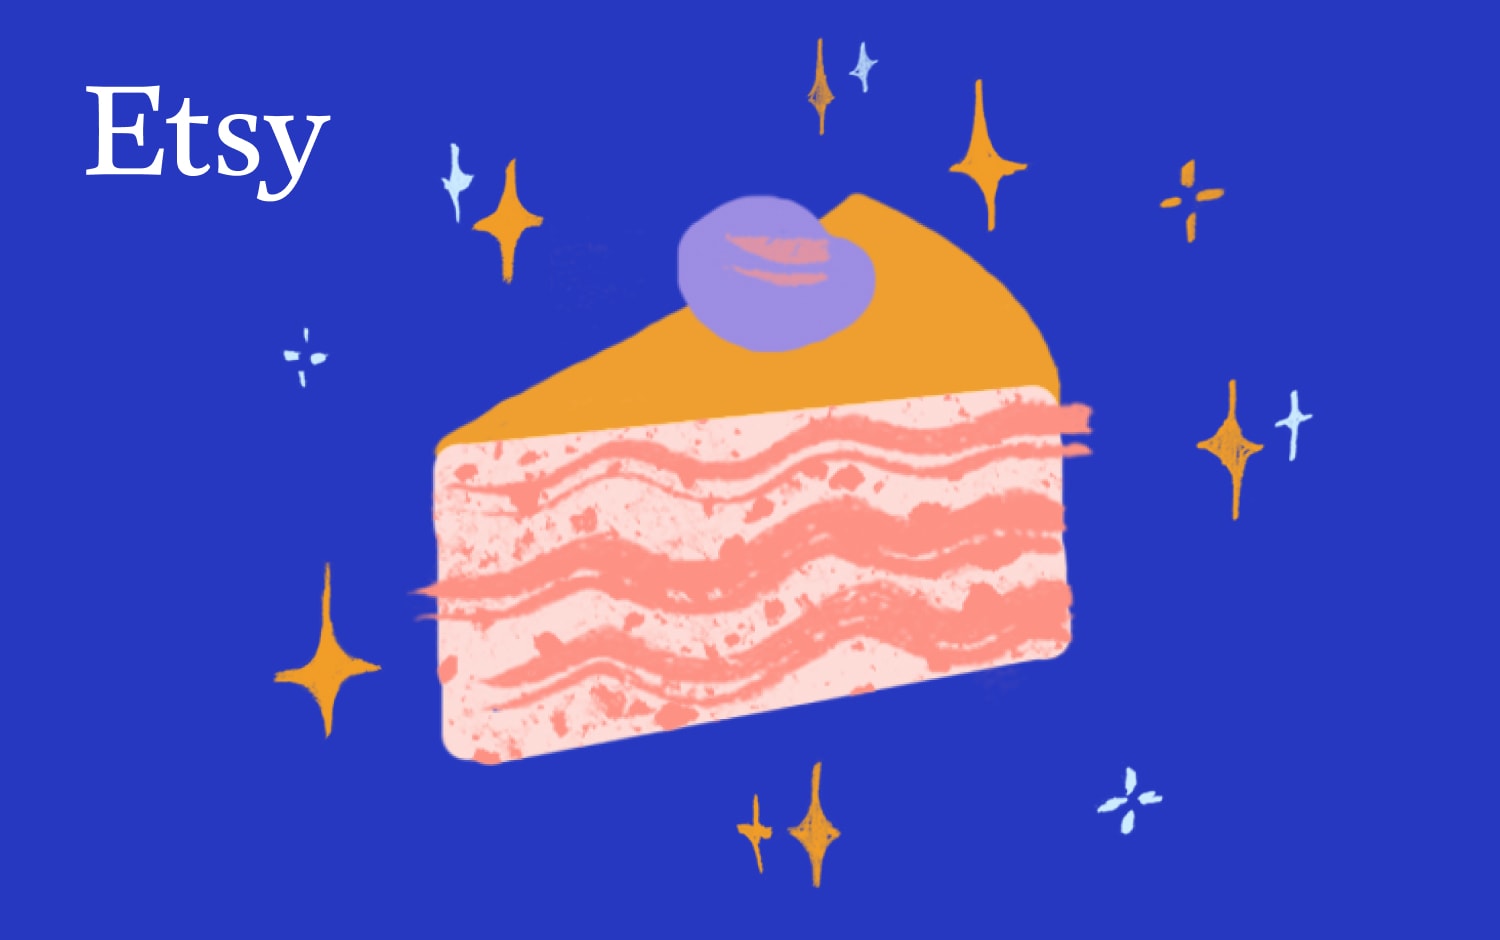 Illustrazione di una fetta di torta a strati con glassa rosa, sormontata da una decorazione viola che ricorda un frutto di bosco. La torta è collocata su uno sfondo blu intenso, cosparso di vari brillantini bianchi e gialli. Nell'angolo in alto a sinistra è presente un logo bianco di Etsy.